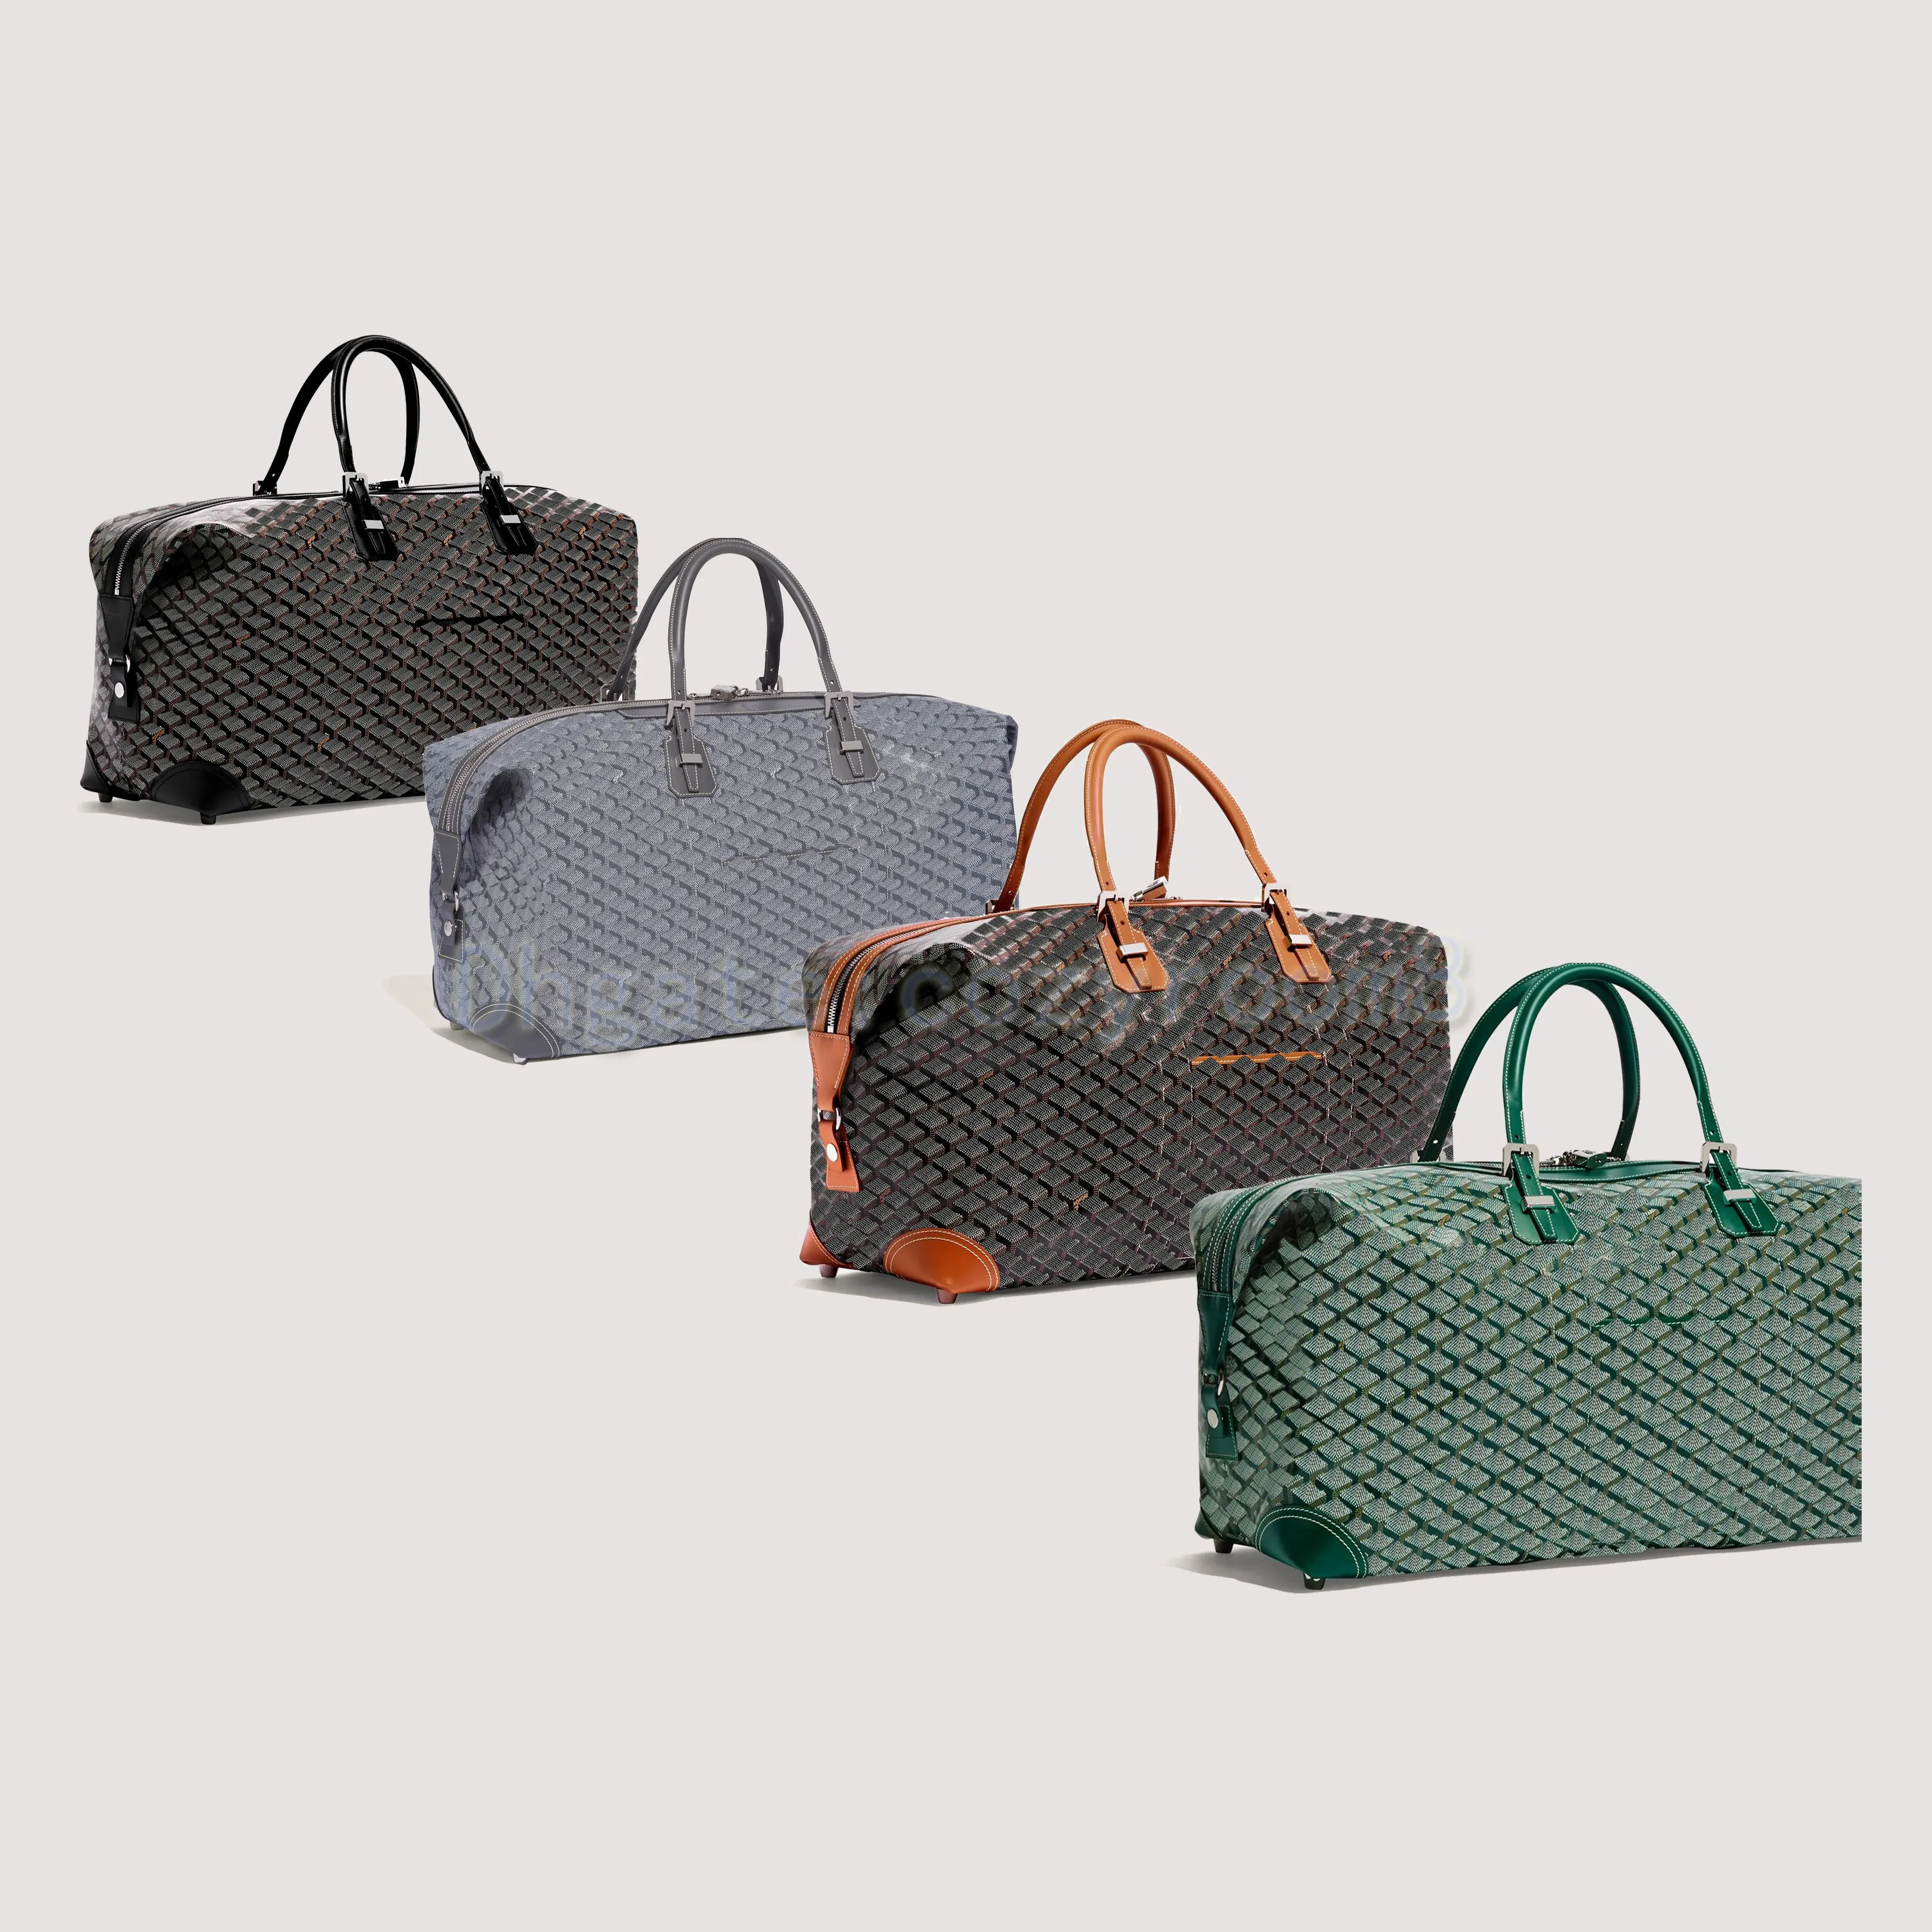 Дорожная сумка для боулинга, вещевые сумки Boeing, роскошная дизайнерская сумка для багажа, женская и мужская холщовая сумка, классический большой объем, клатч для отпуска, портативная спортивная сумка, сумки с буквами